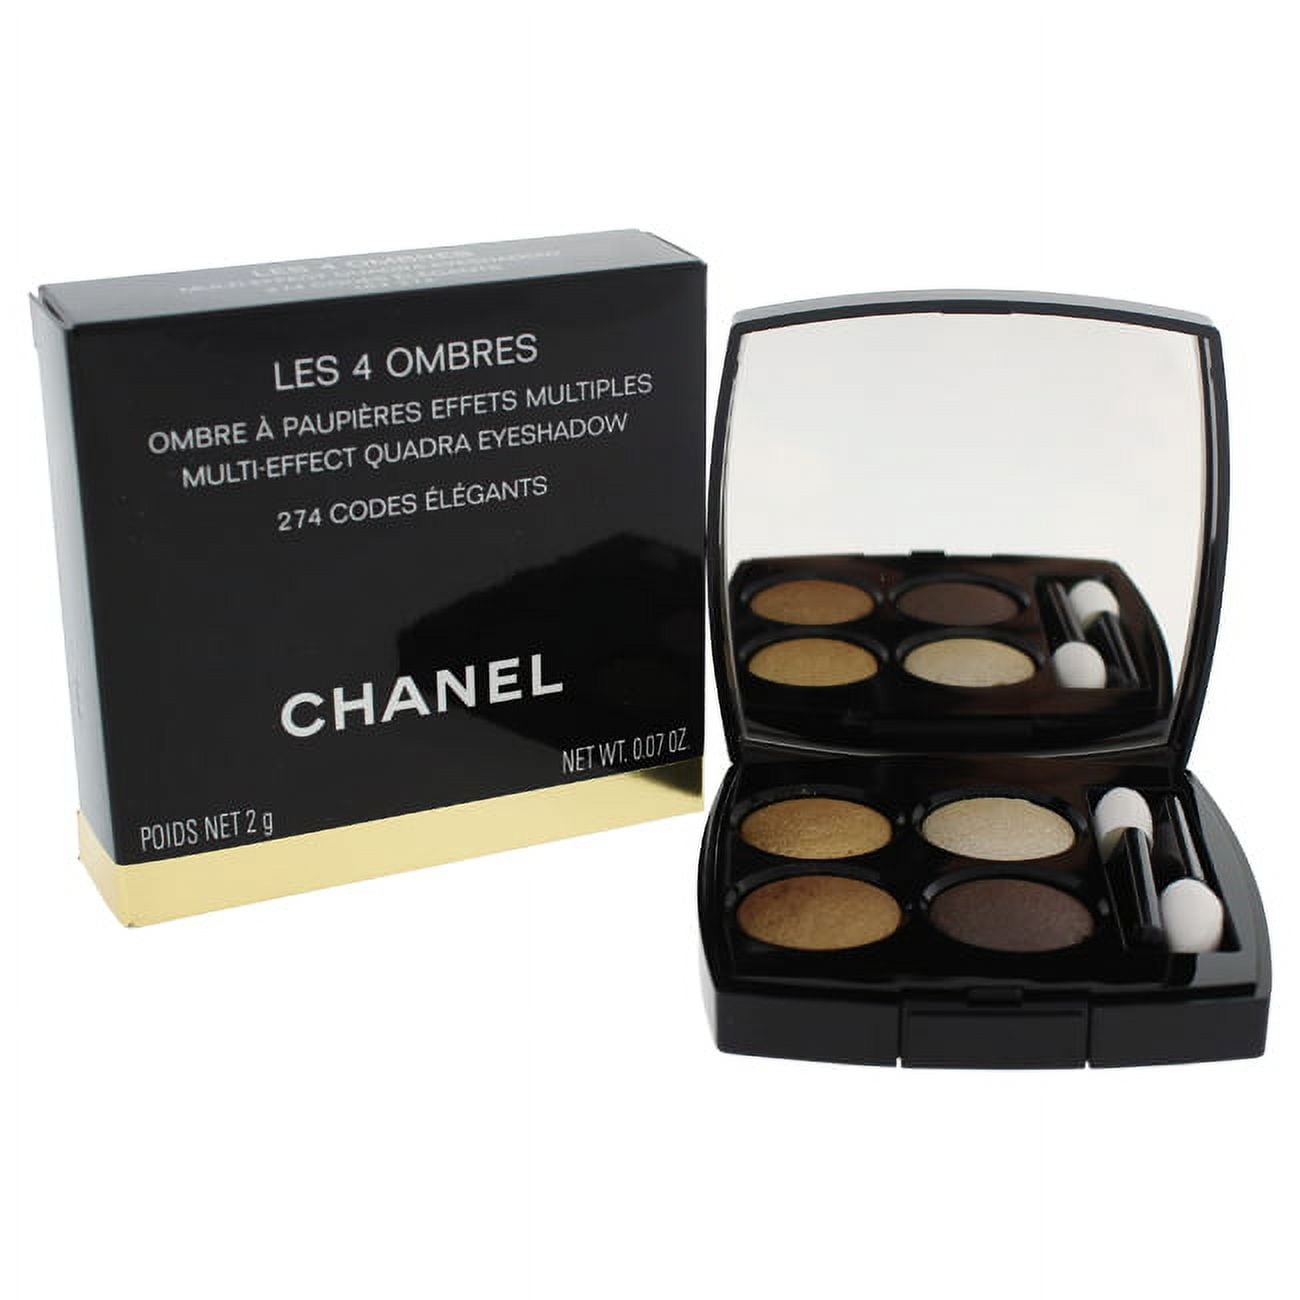 Anna S. on Instagram: “[Chanel multi-effect quadra eyeshadow in